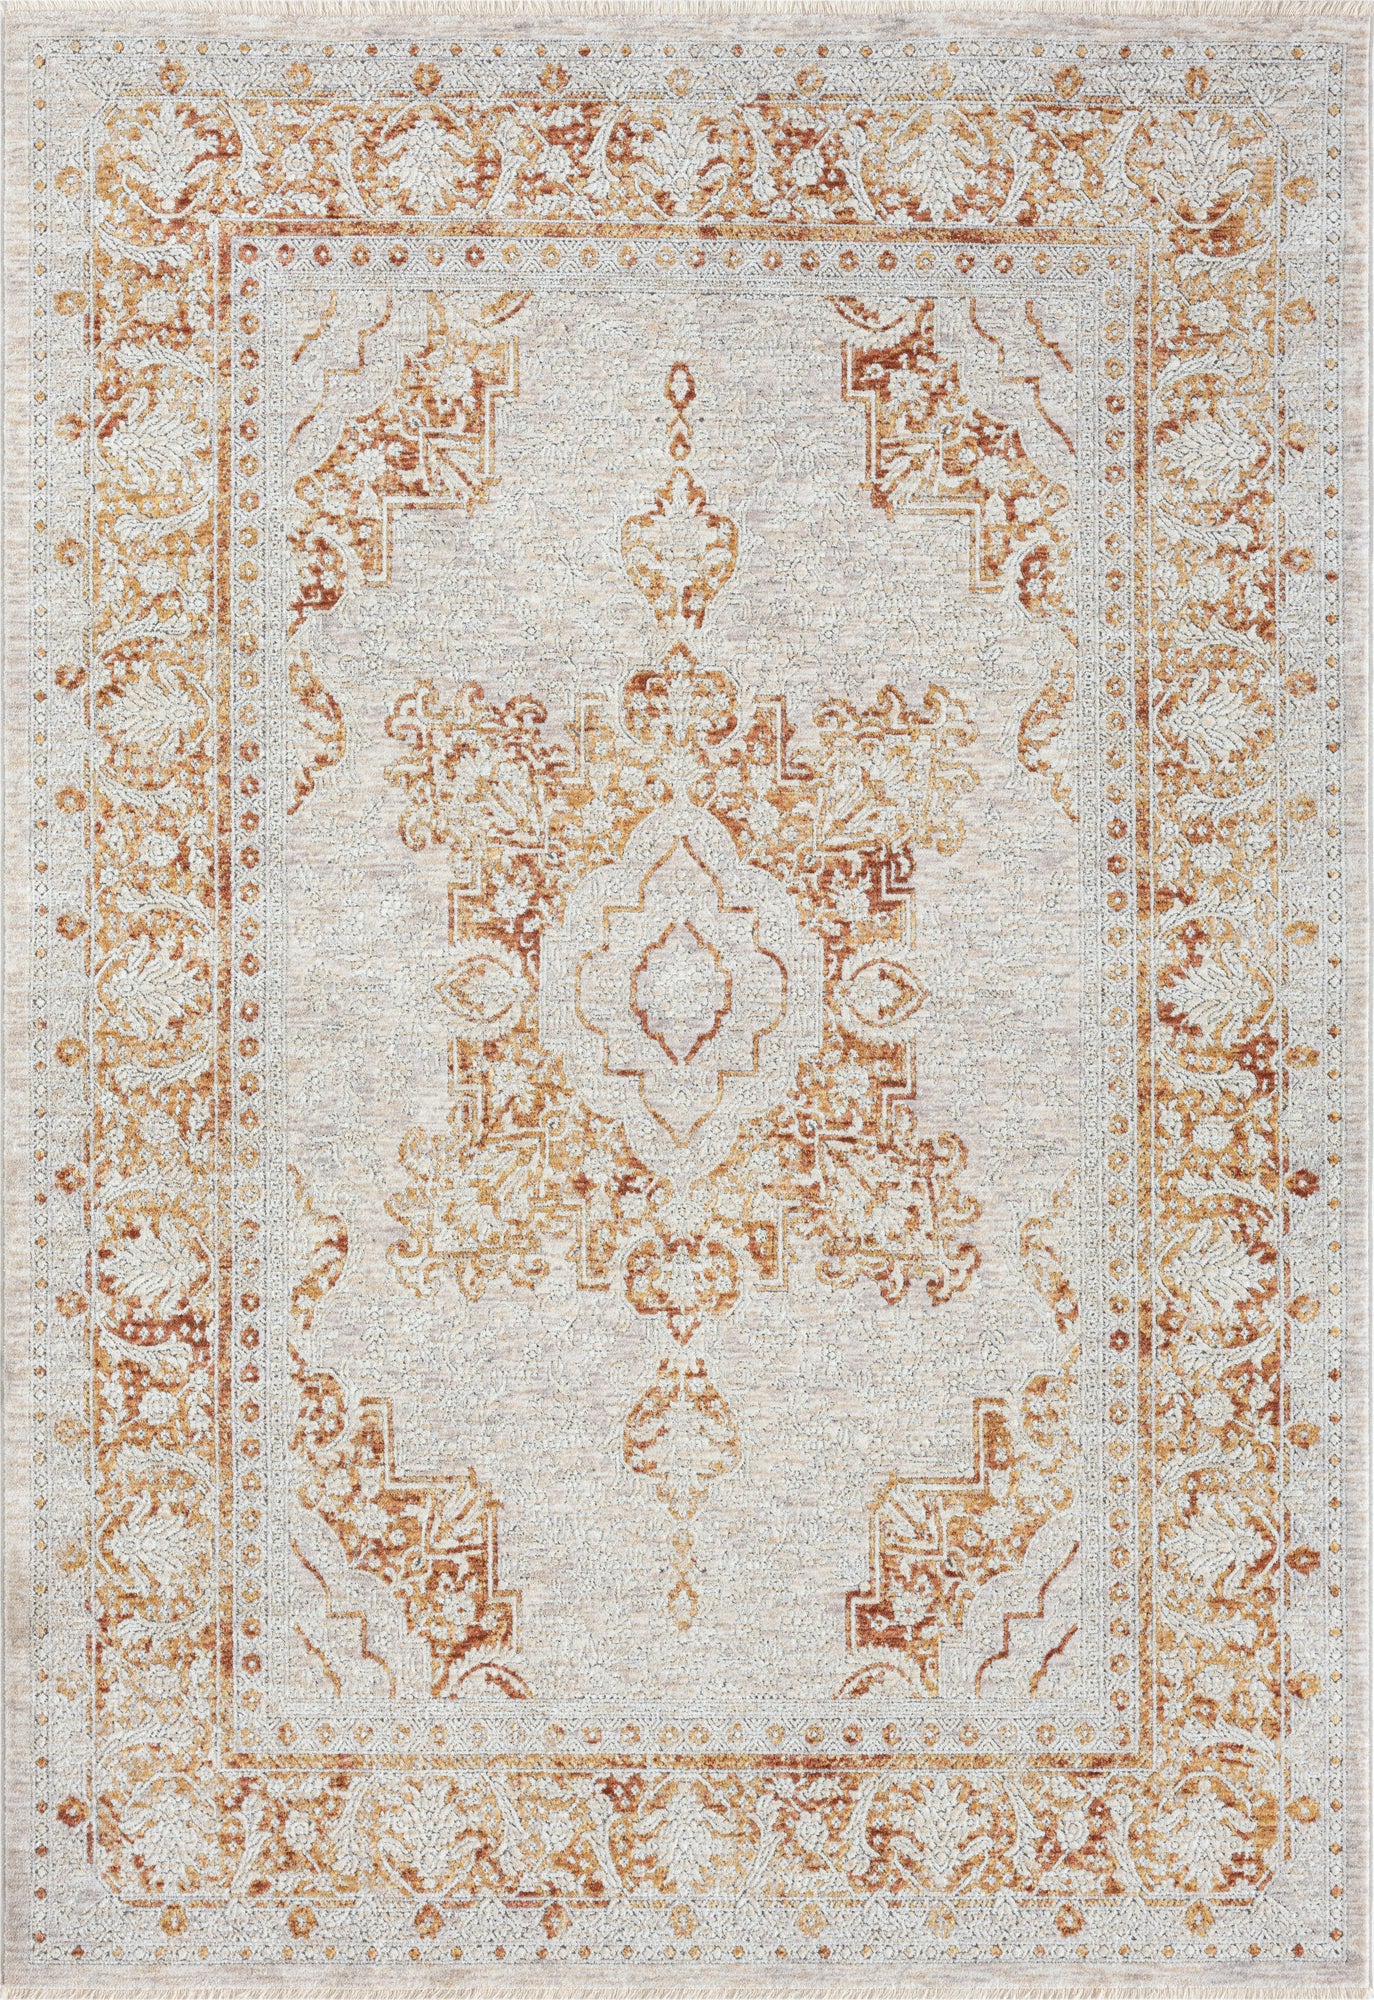 American cover design / Persian weavers Aurora 848 Rustic Ivory Rug